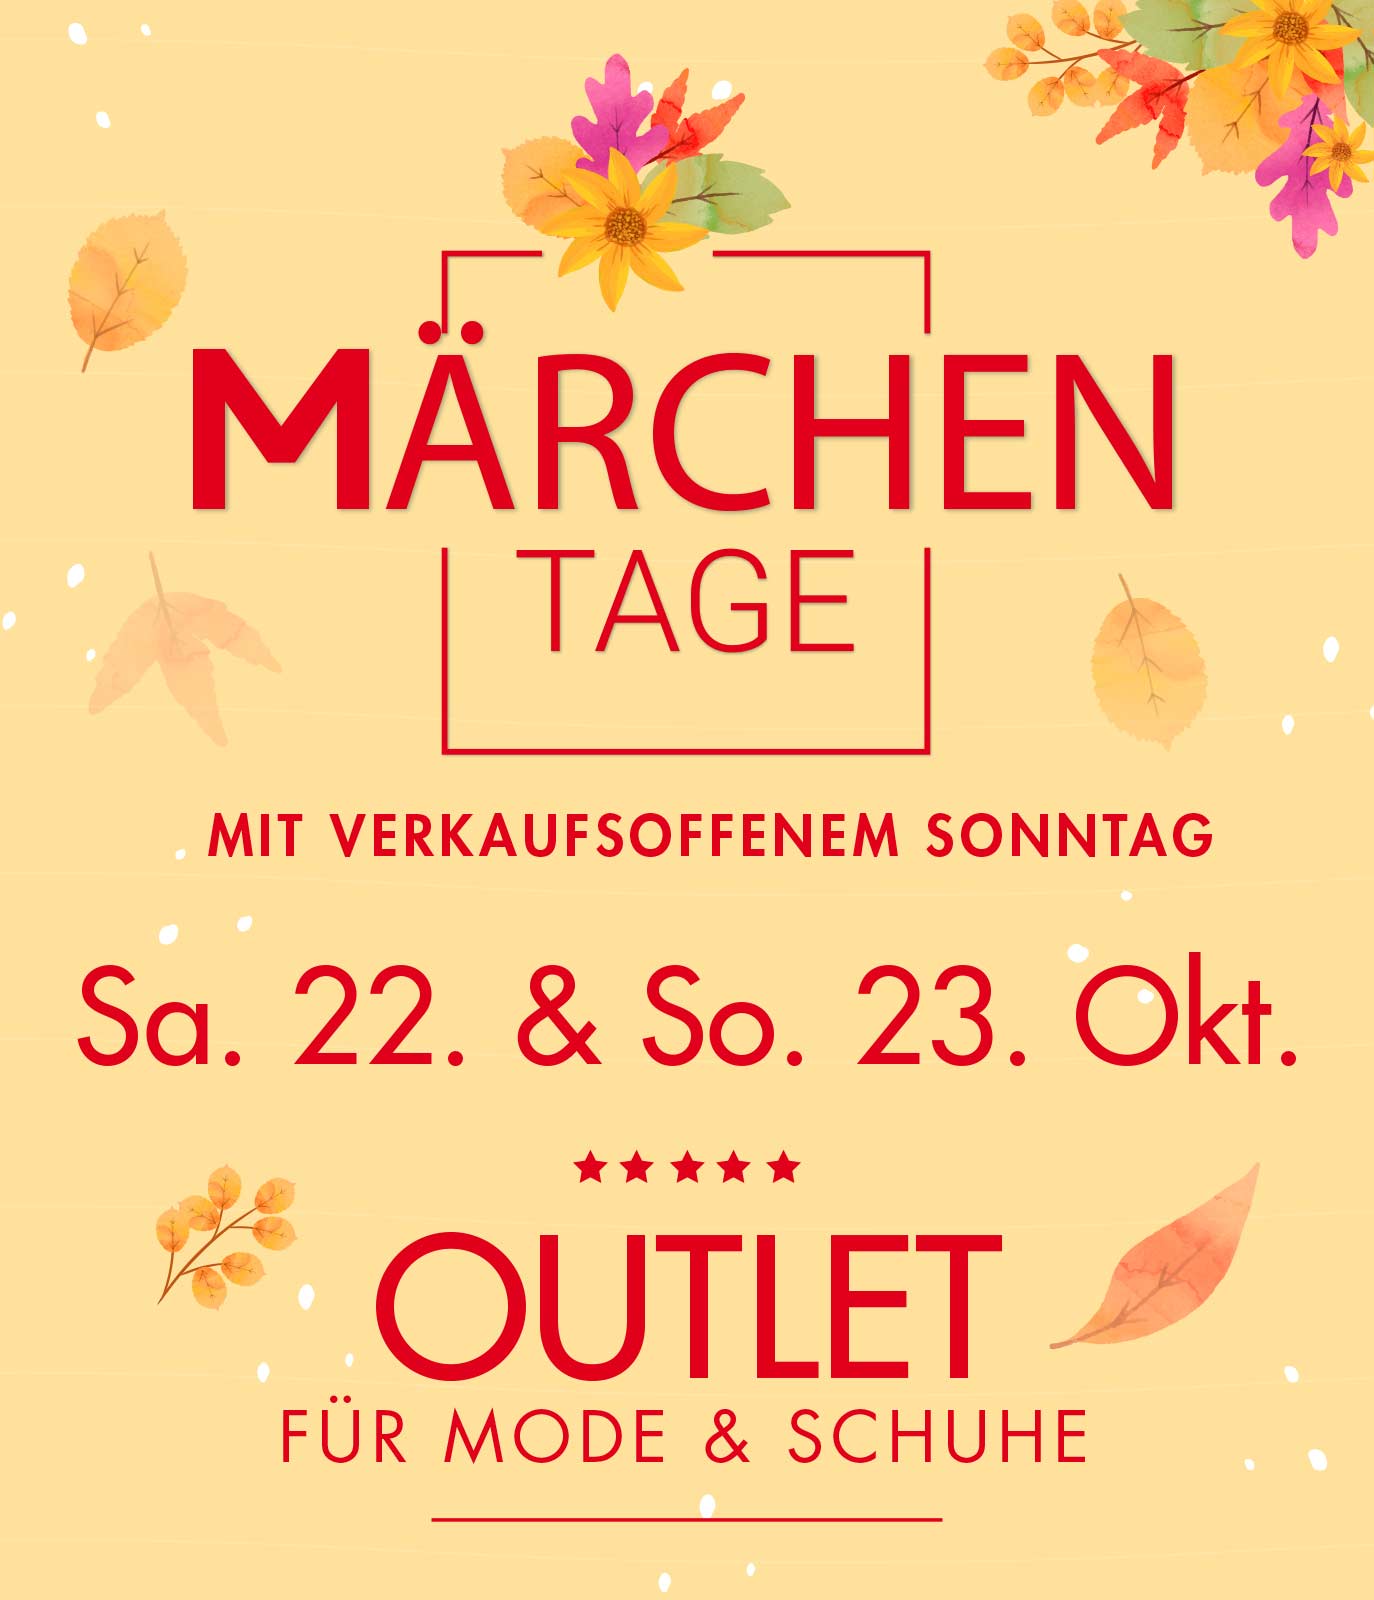 Märchentage in Bad Säckingenvom 22.& 23. Oktober | Outlet für Mode & Schuhe bei Ulli S. mit tollen Marken-Schnäppchen und attraktiven Used Artikeln